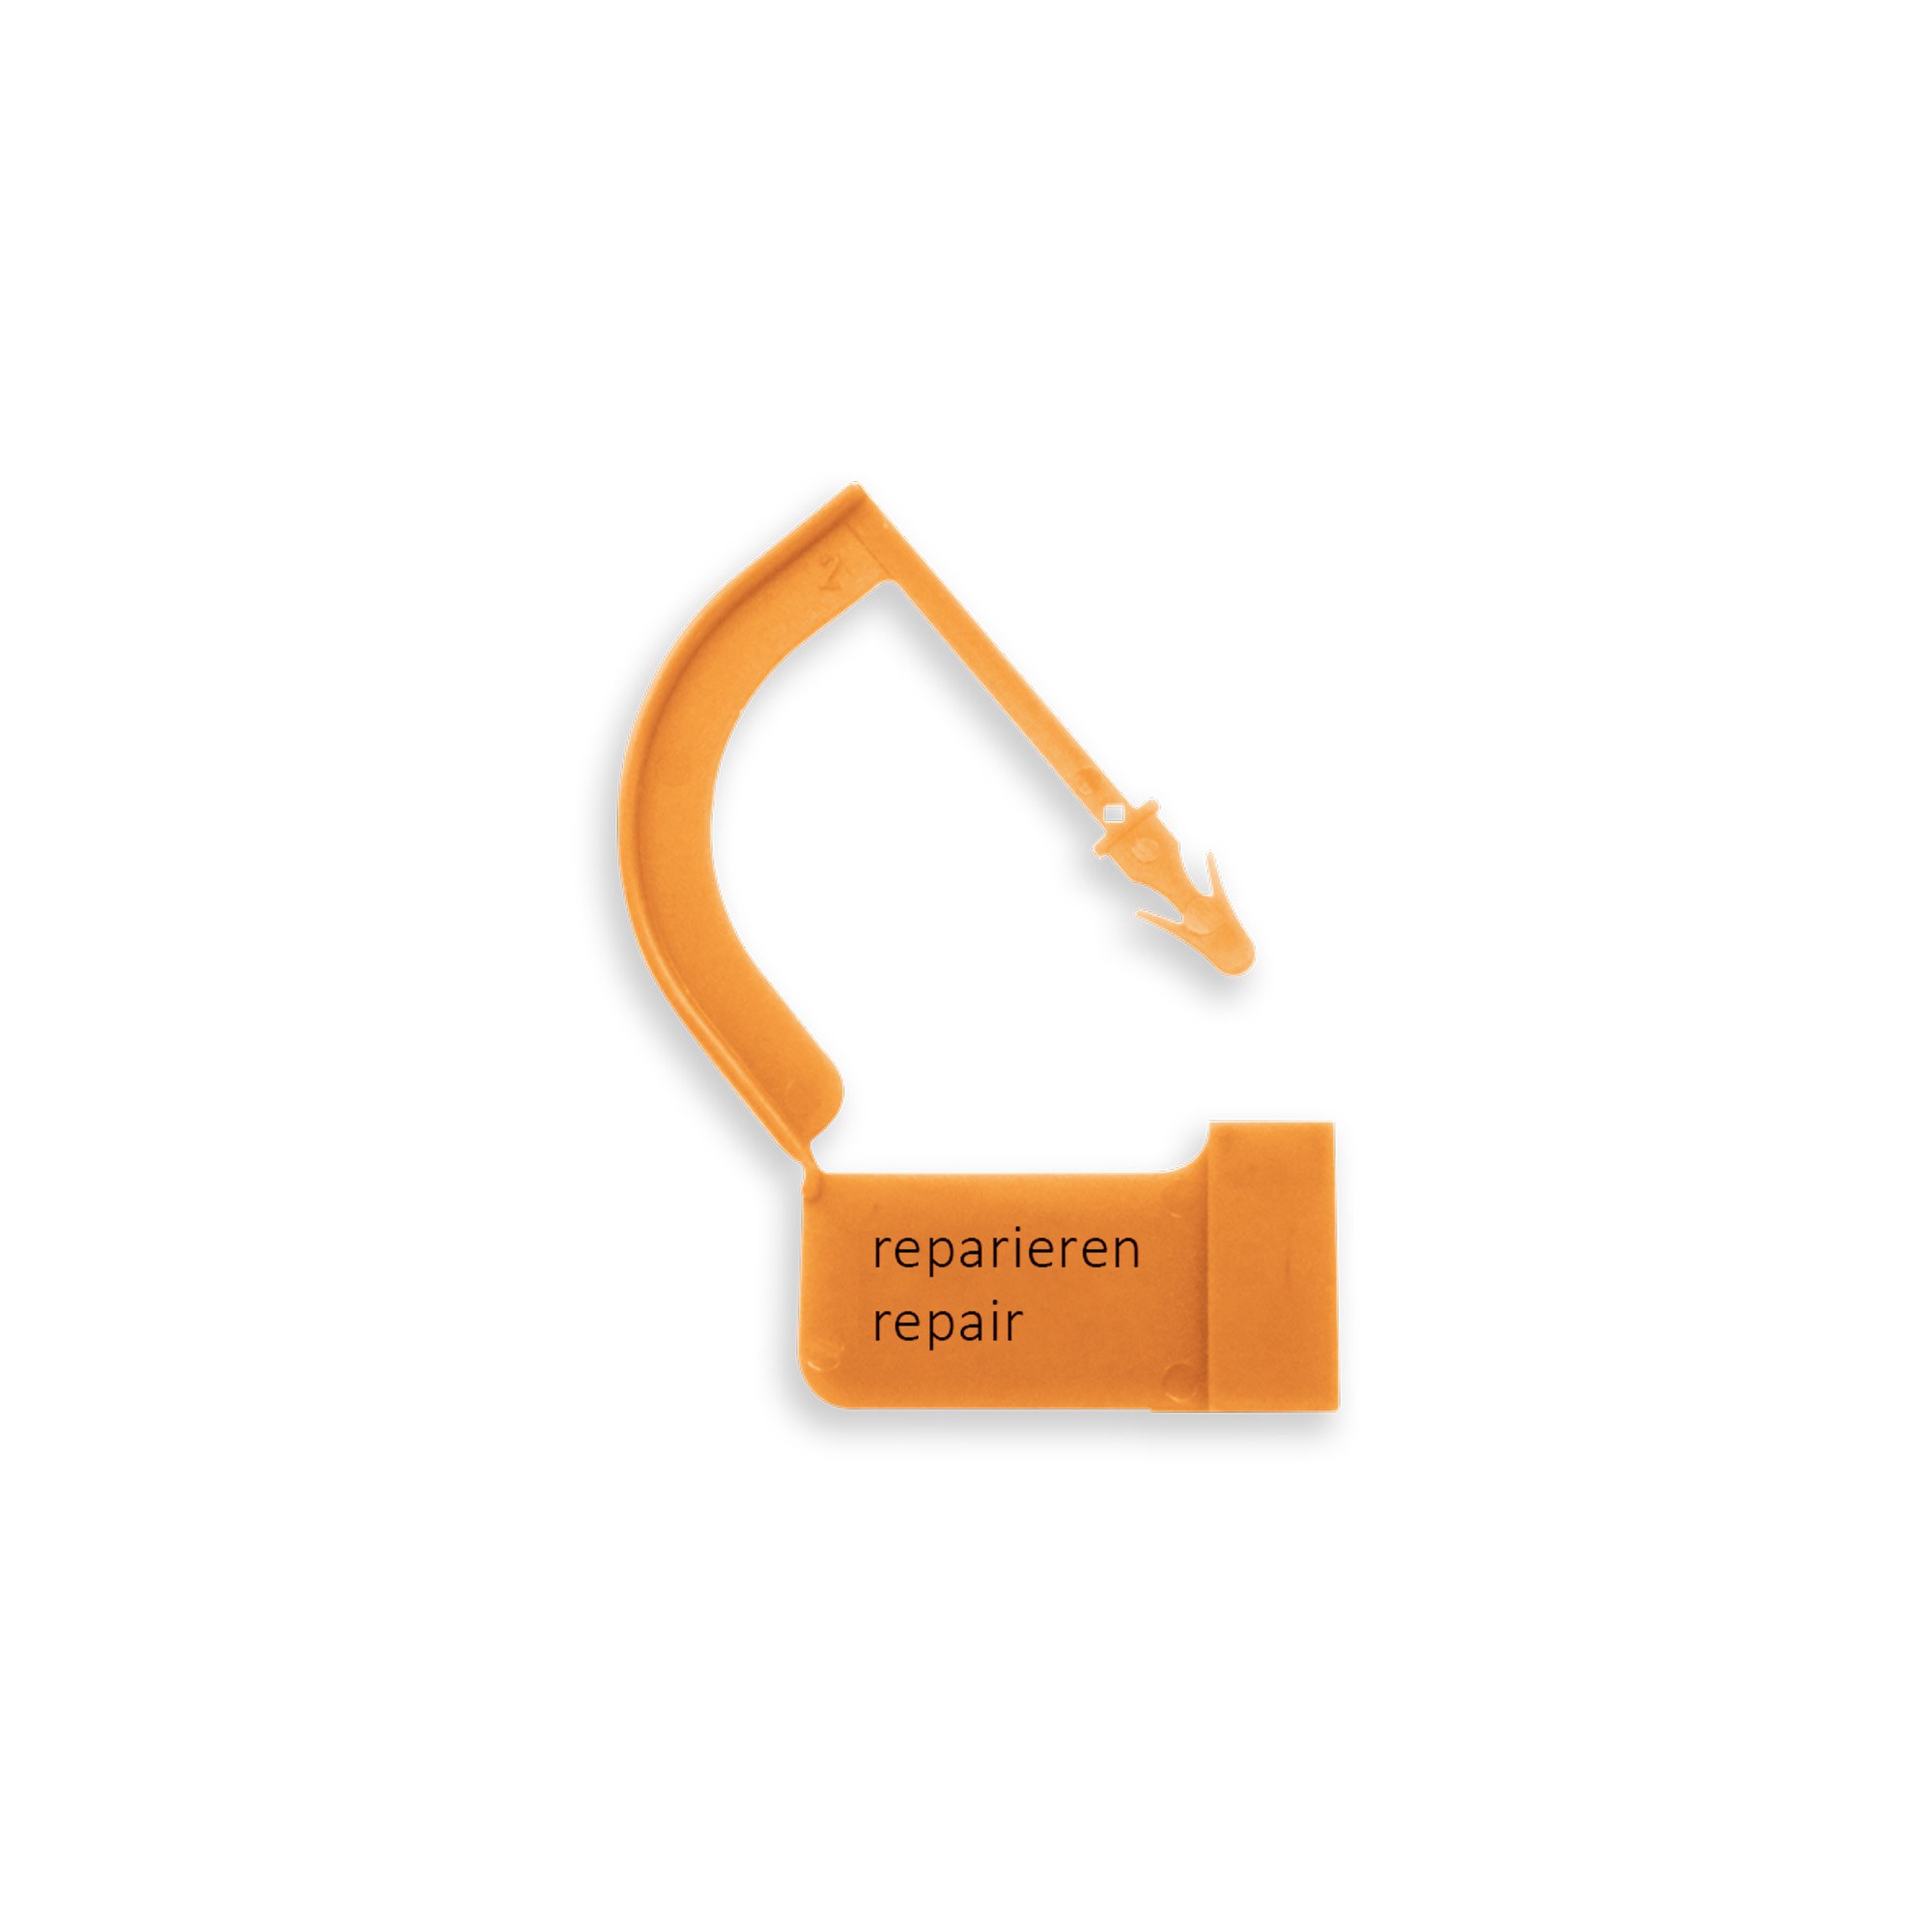 Repair tags "reparieren / repair" Image